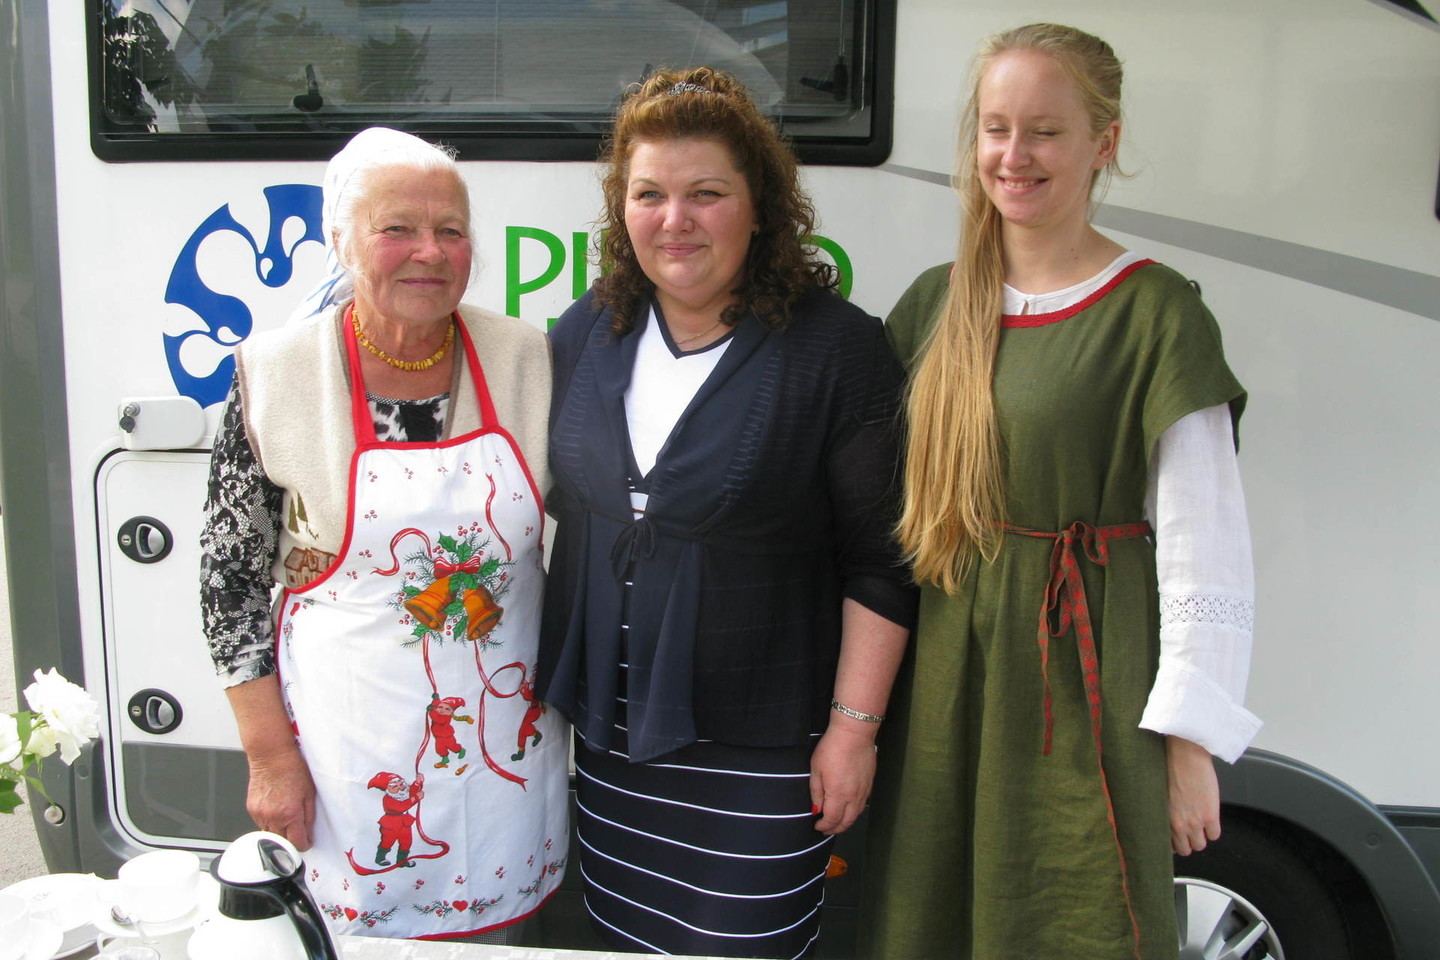 Pieno kelio iniciatorė – Laima Dockevičienė (viduryje).<br>A.Murauskaitės nuotr.